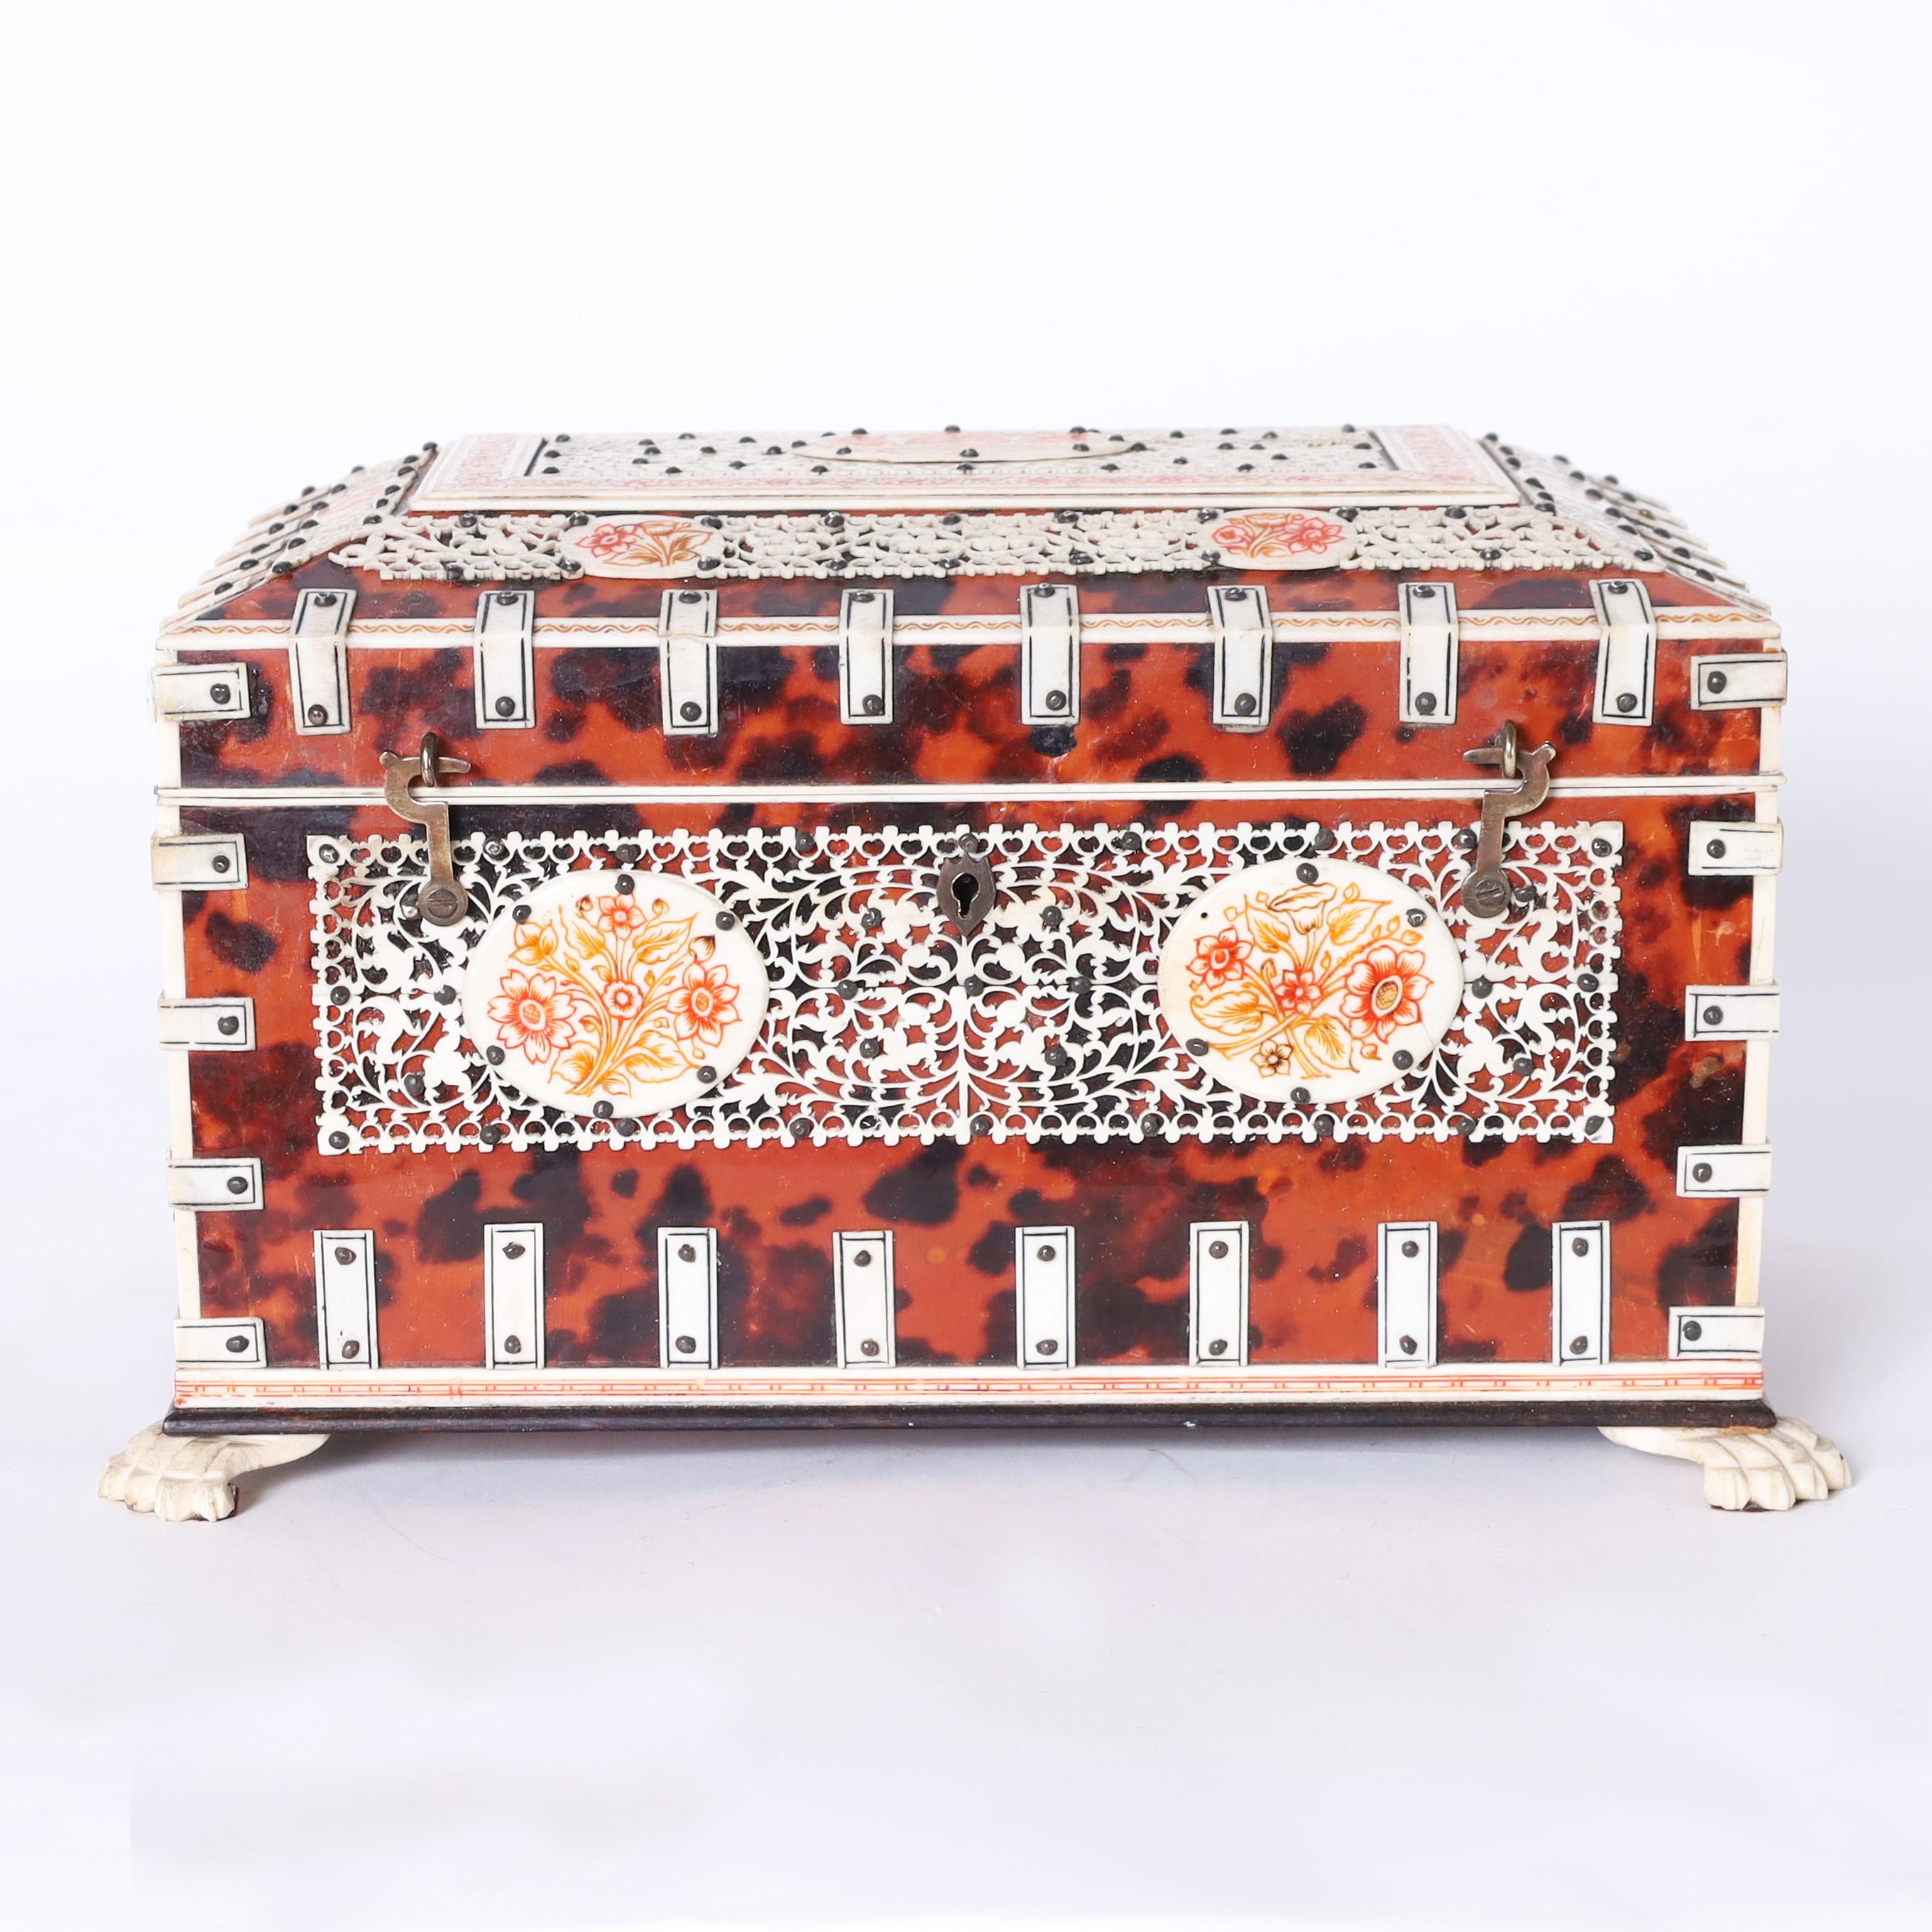 Beeindruckende anglo-indianische Kiste aus Mahagoni und Schildpatt, verziert mit Knochenriemen, geschnitzten und gemalten Blumentafeln und Tatzenfüßen. Das Innere ist mit einem Spiegel und mit Knochen verzierten, herausnehmbaren Fächern ausgestattet.